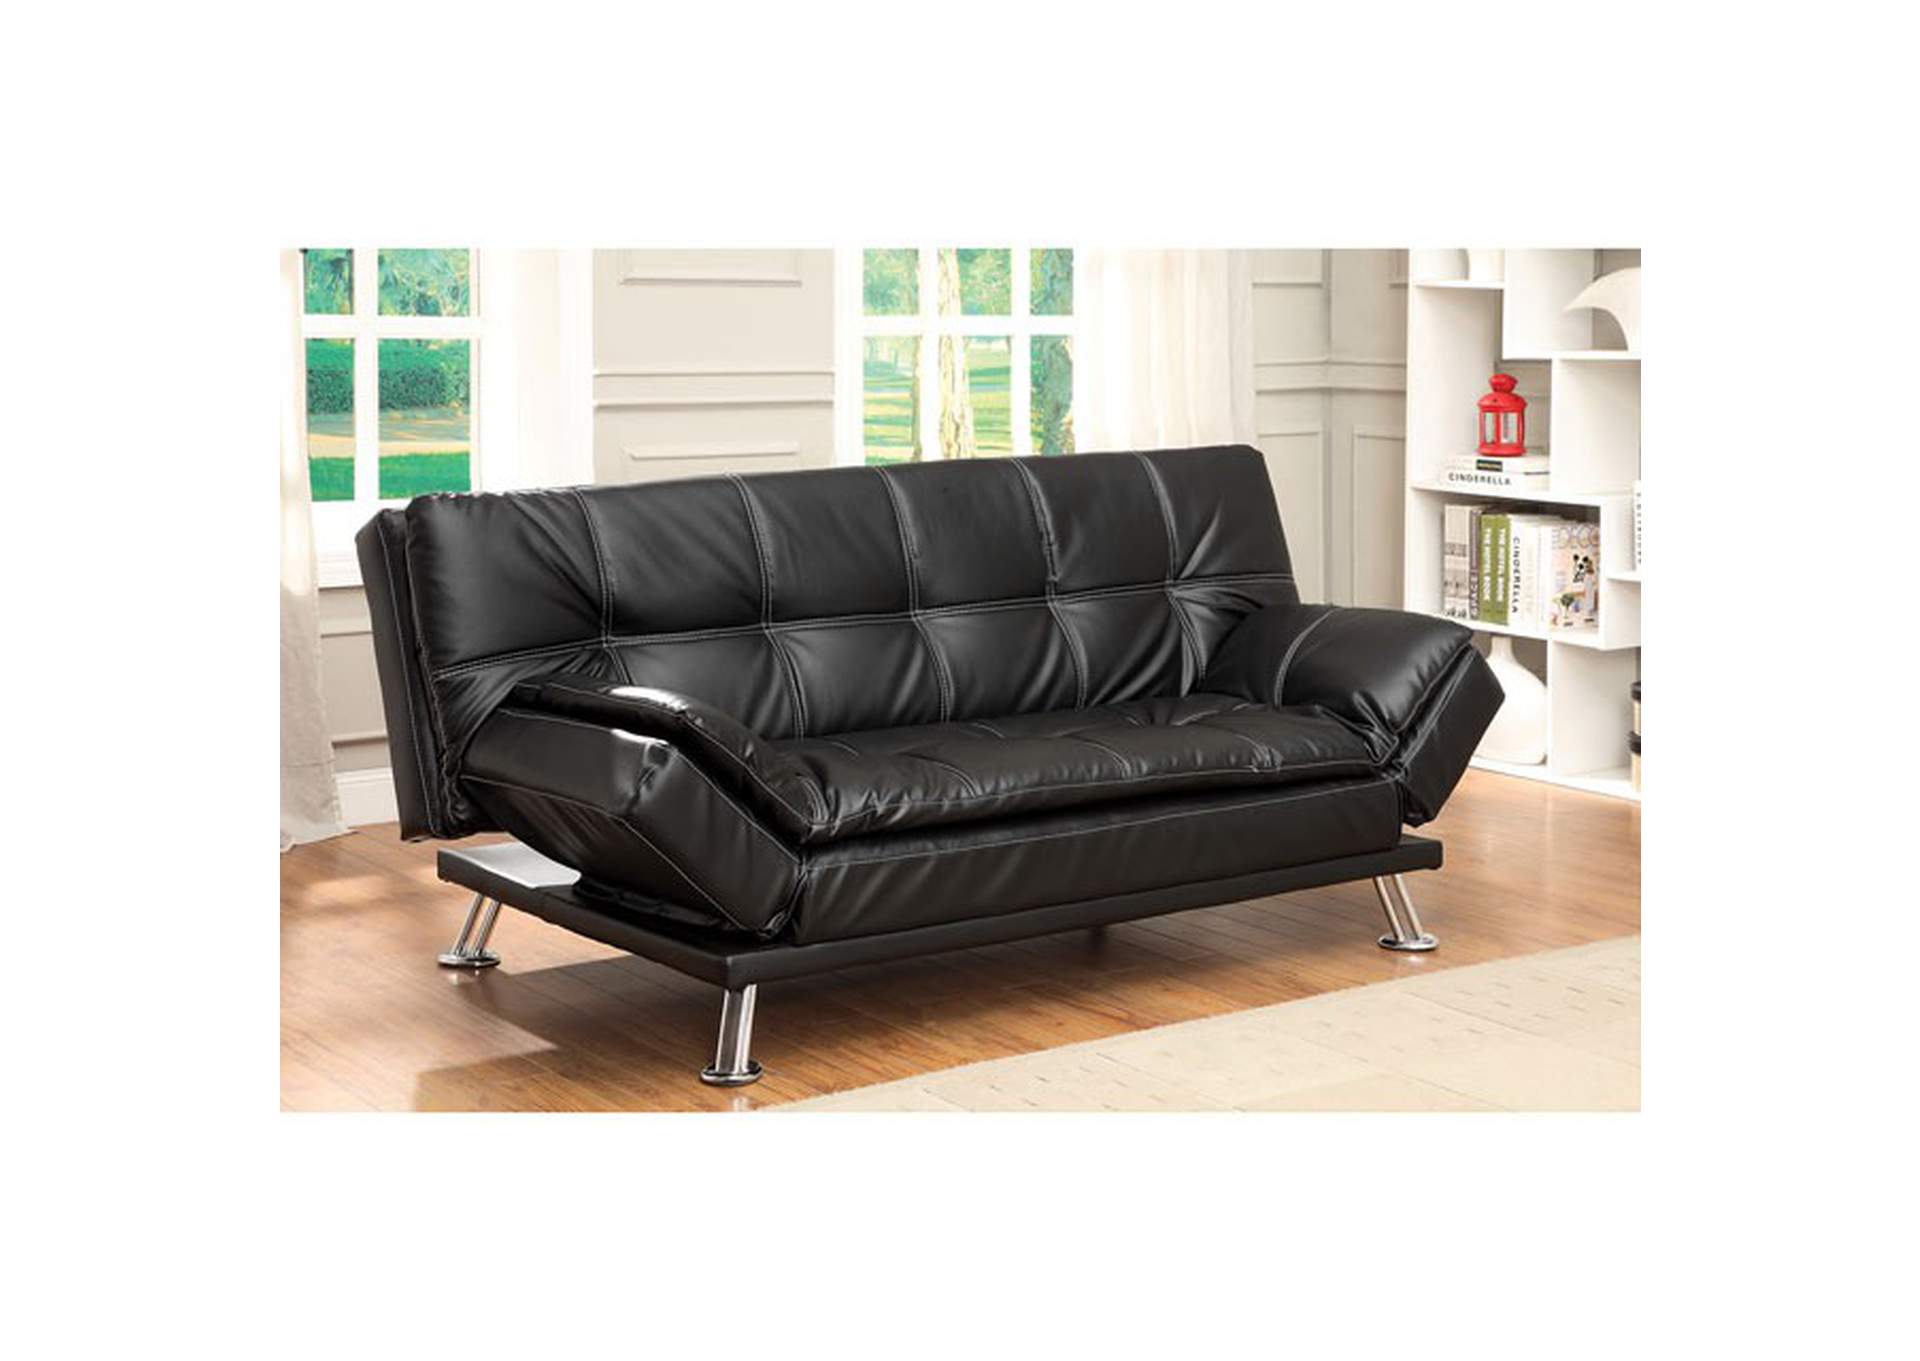 Hauser Futon Sofa,Furniture of America